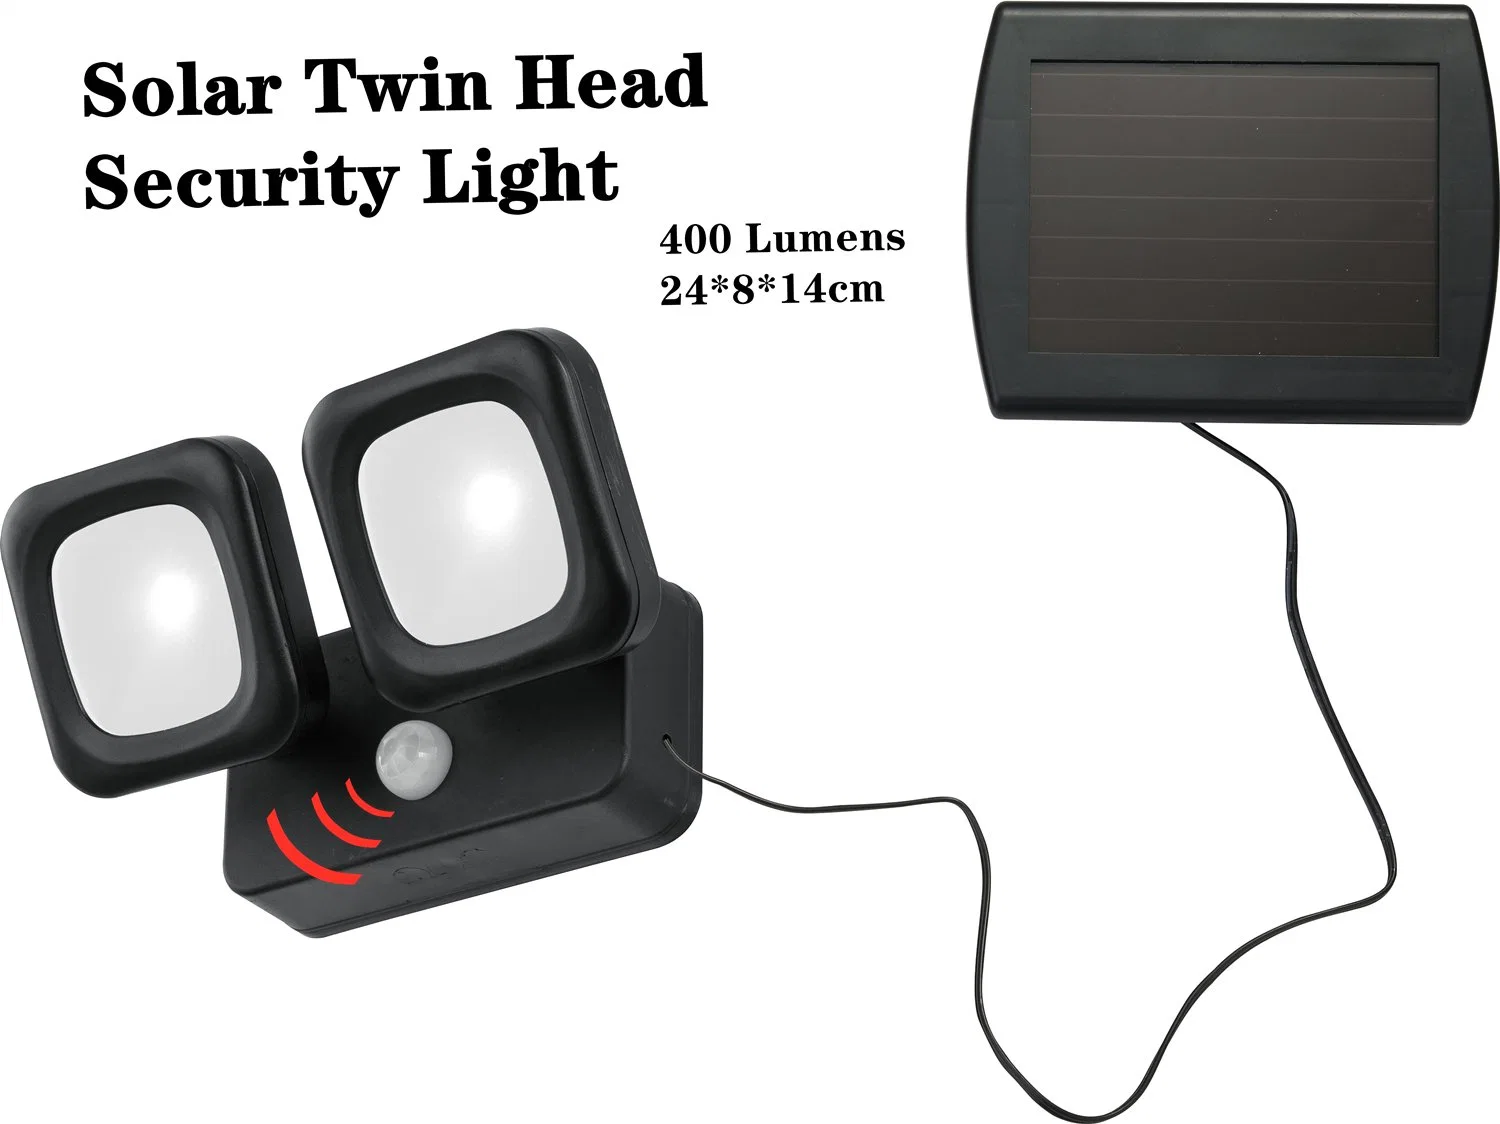 2 Capteur solaire de sécurité de la tête de la lumière avec le détecteur IRP - 400 Lumens